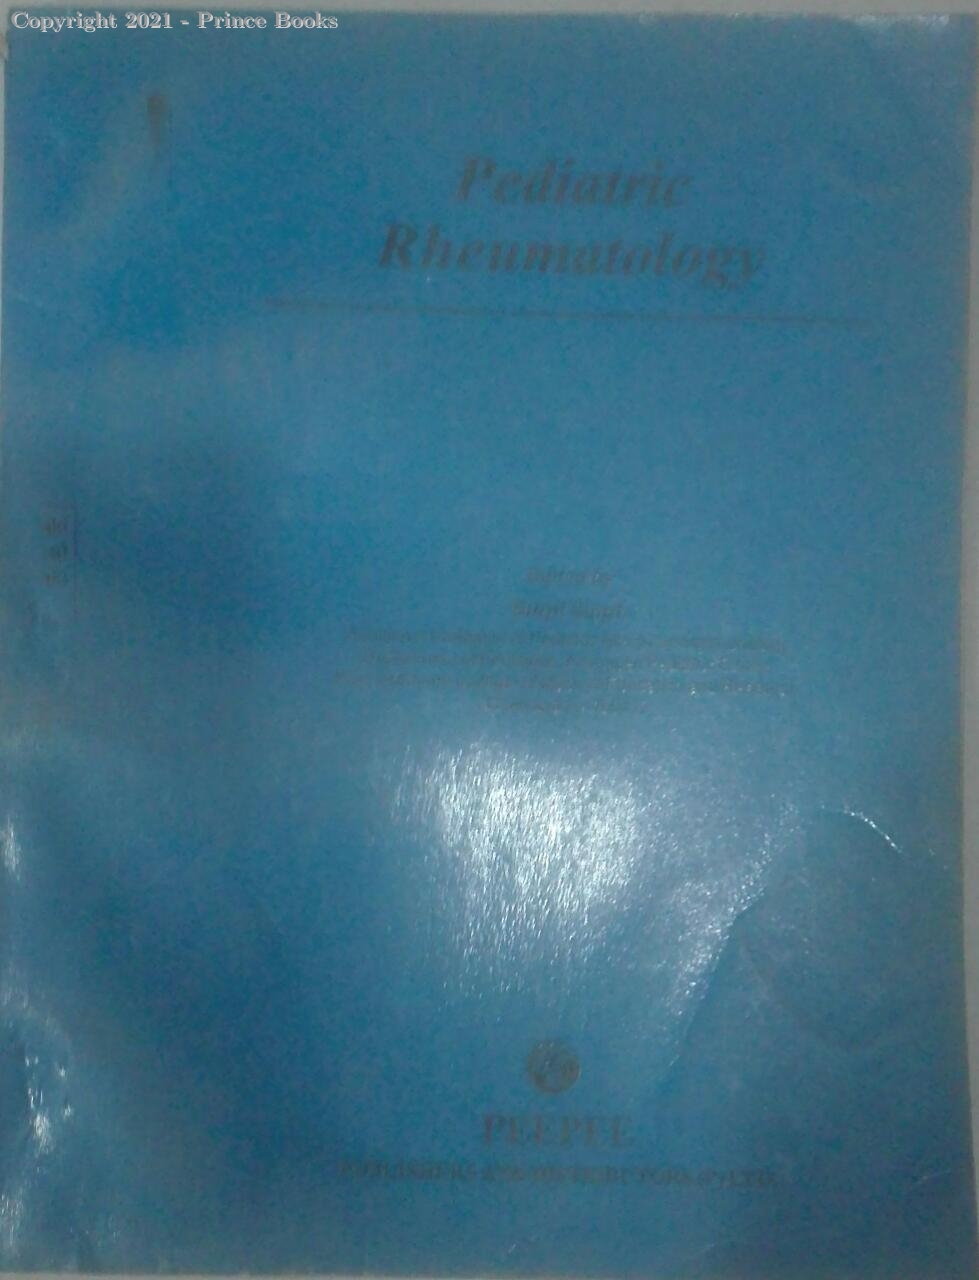 pediatric rheumatology BY SURJIT, 1e